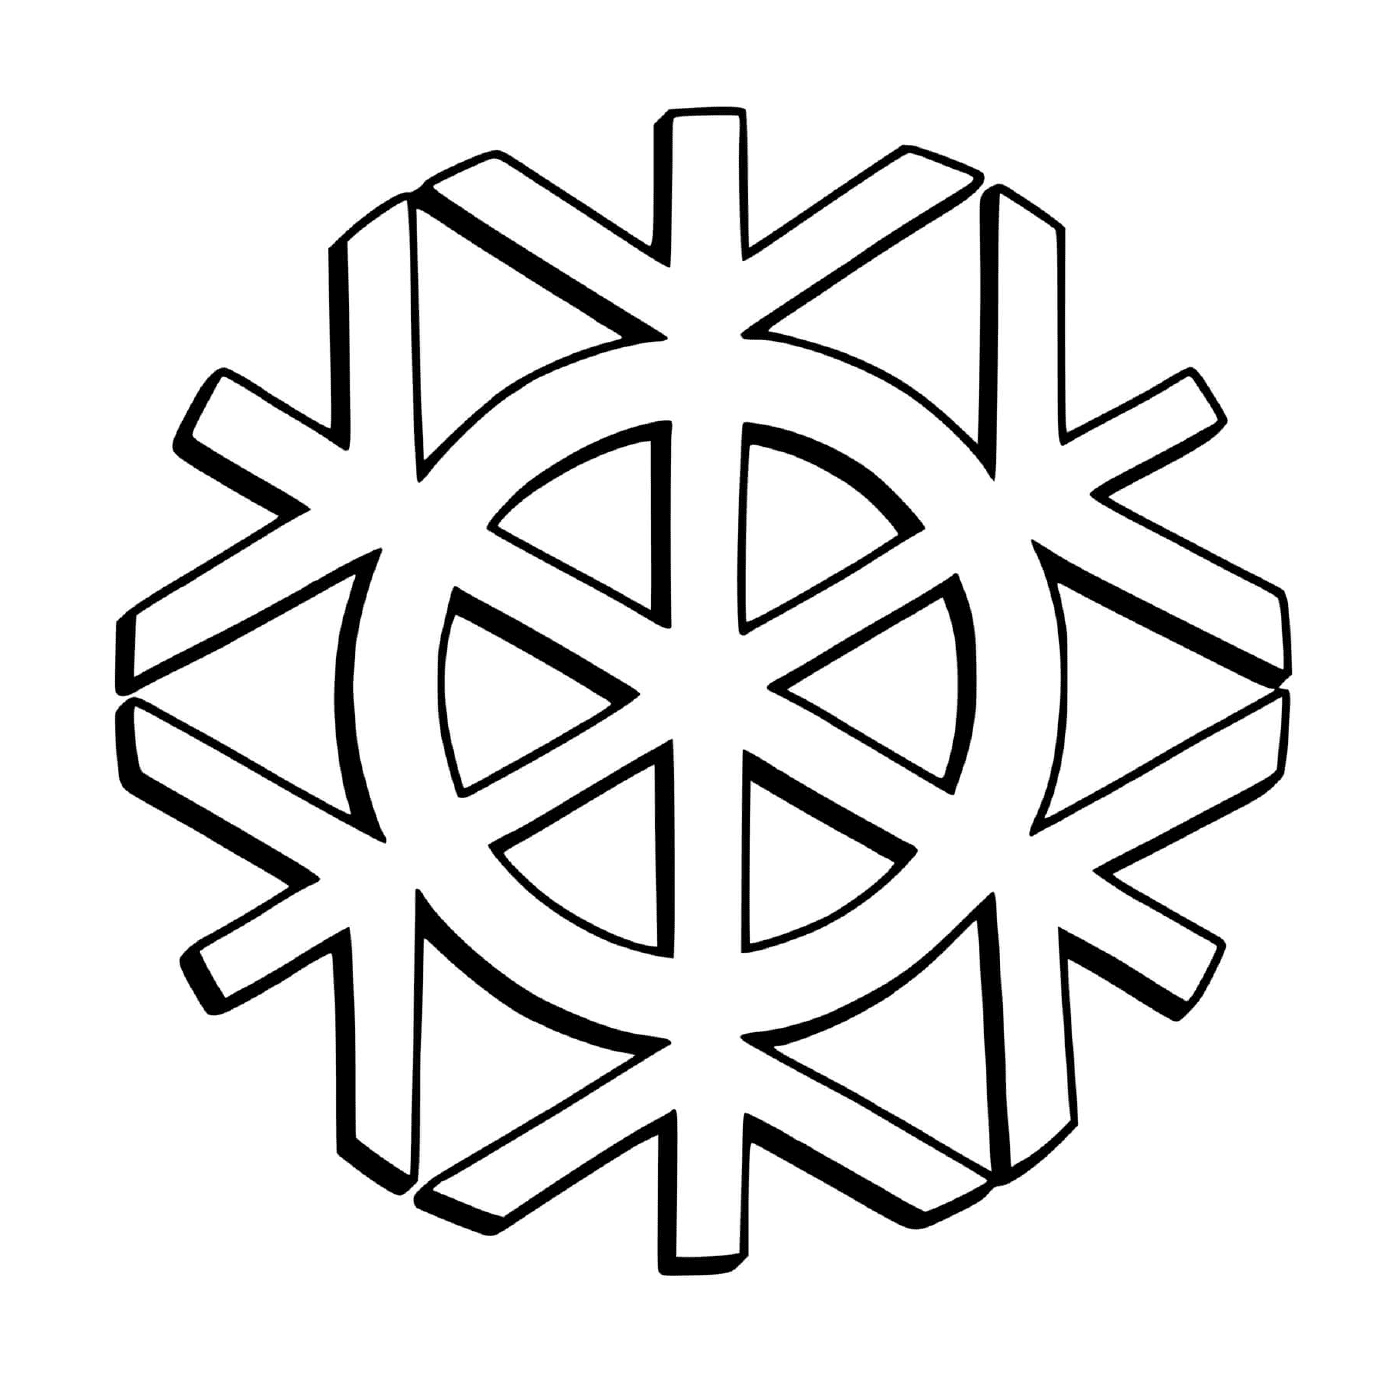  雪花和平标志 